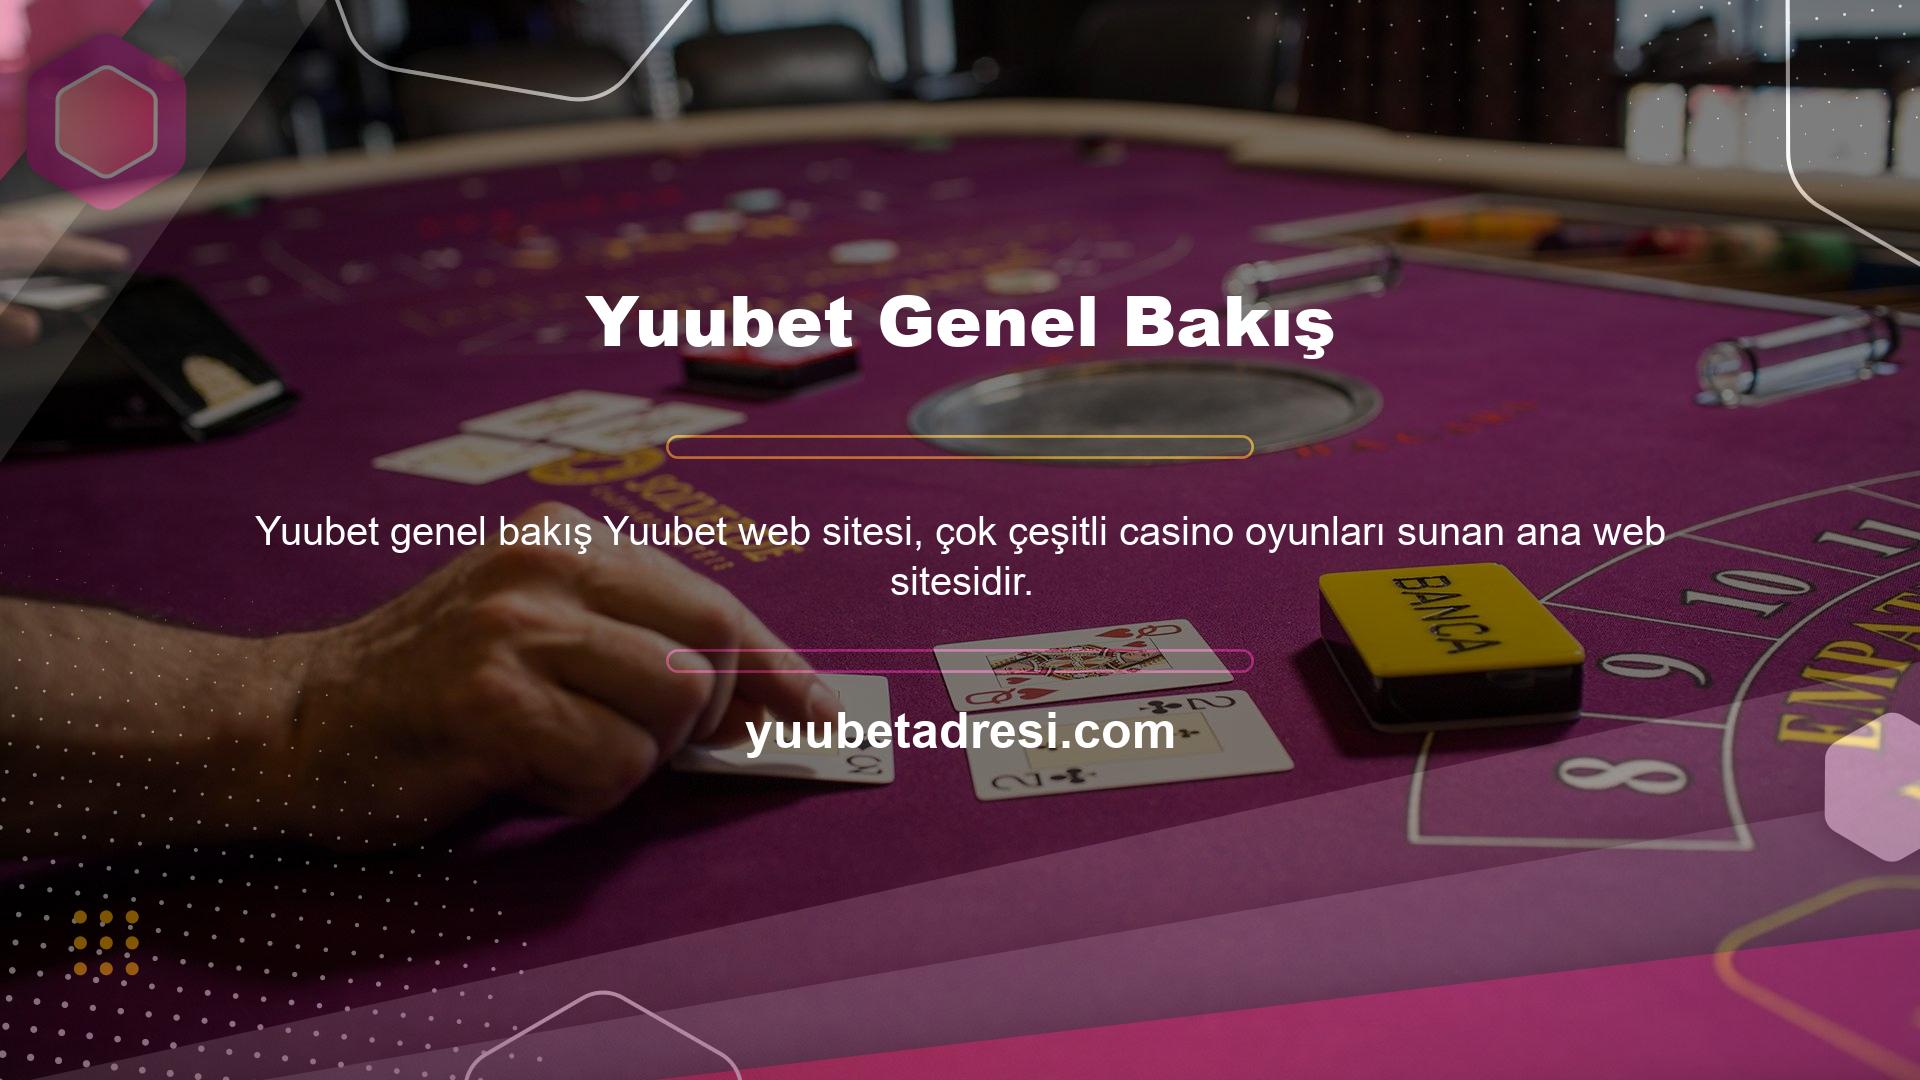 Çok çeşitli içerikler barındıran Yuubet internet sitesini kullanmak için yukarıdaki bölümde anlatıldığı gibi internet sitesine kayıt olmalısınız